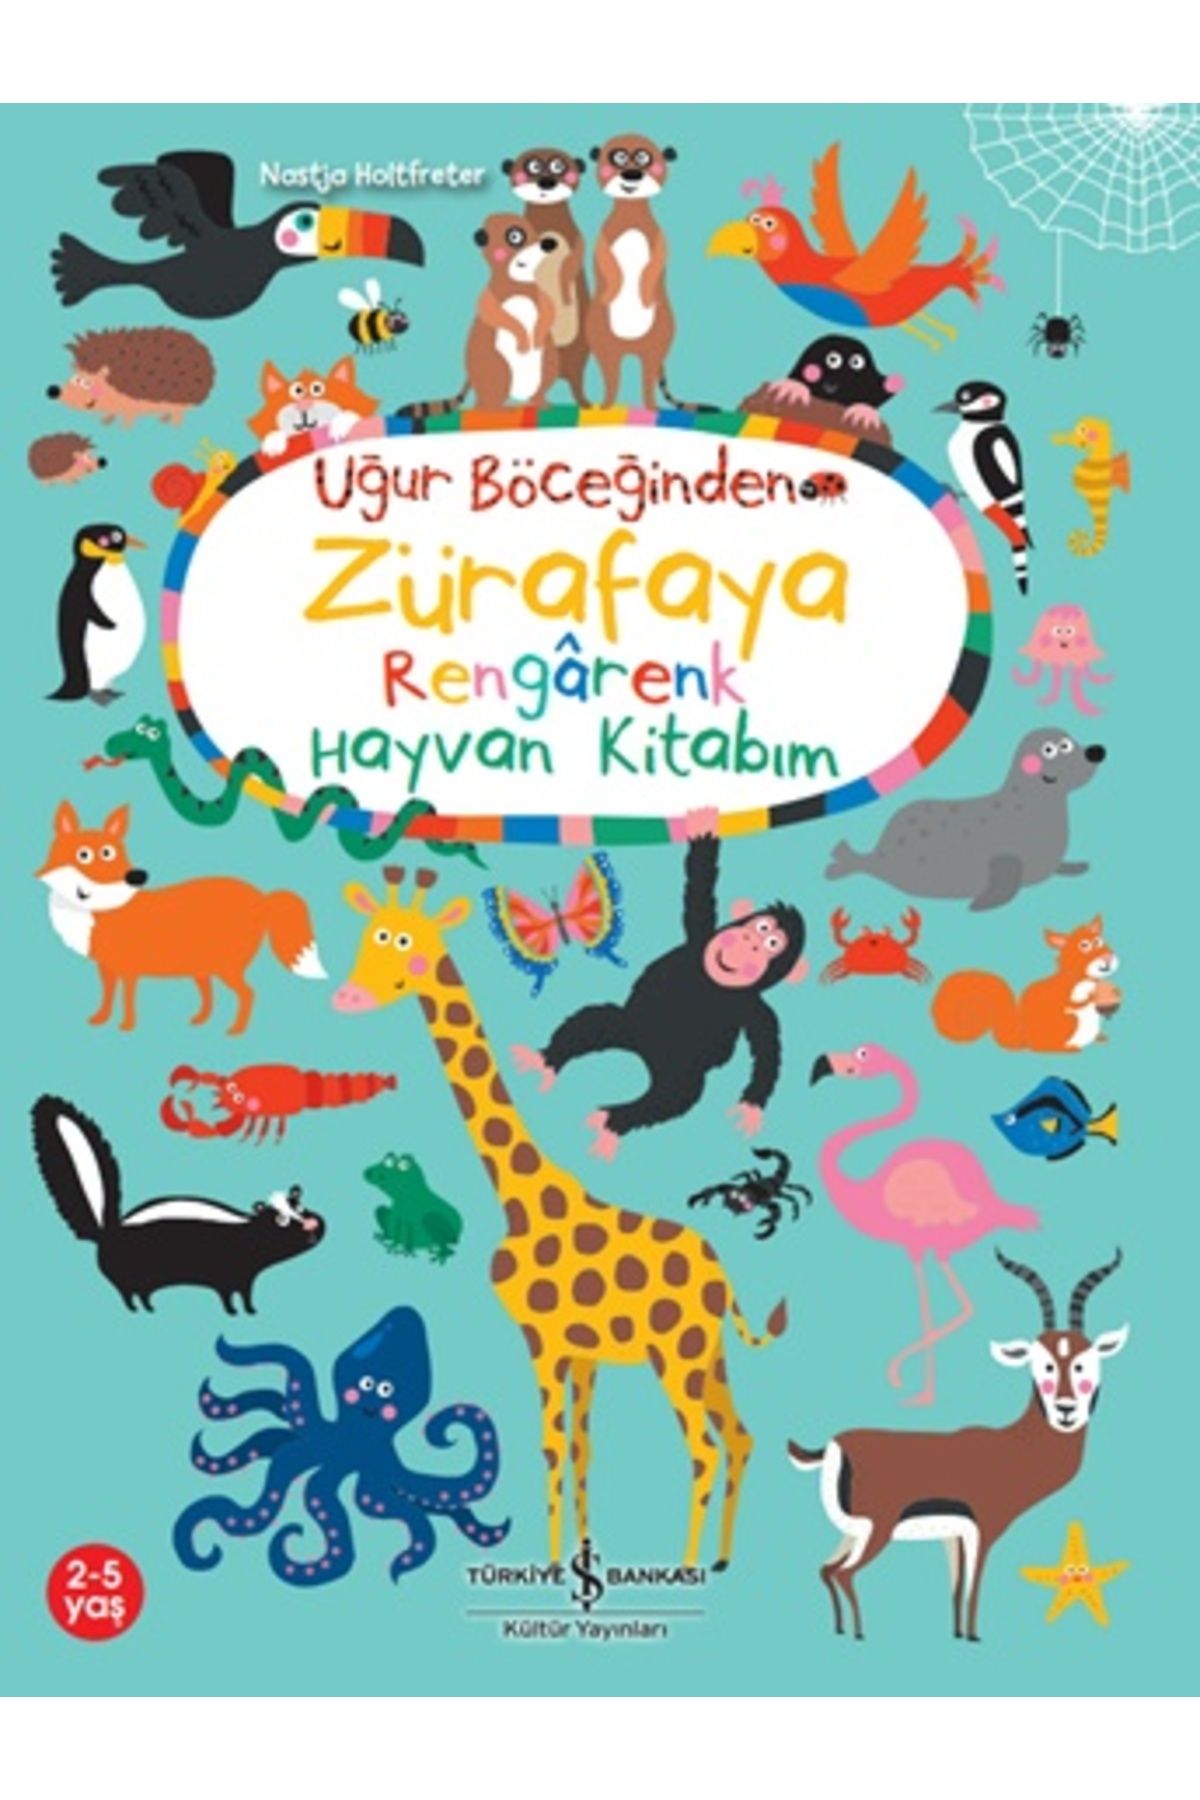 Türkiye İş Bankası Kültür Yayınları Uğur Böceğinden Zürafaya Rengarenk Hayvan Kitabım